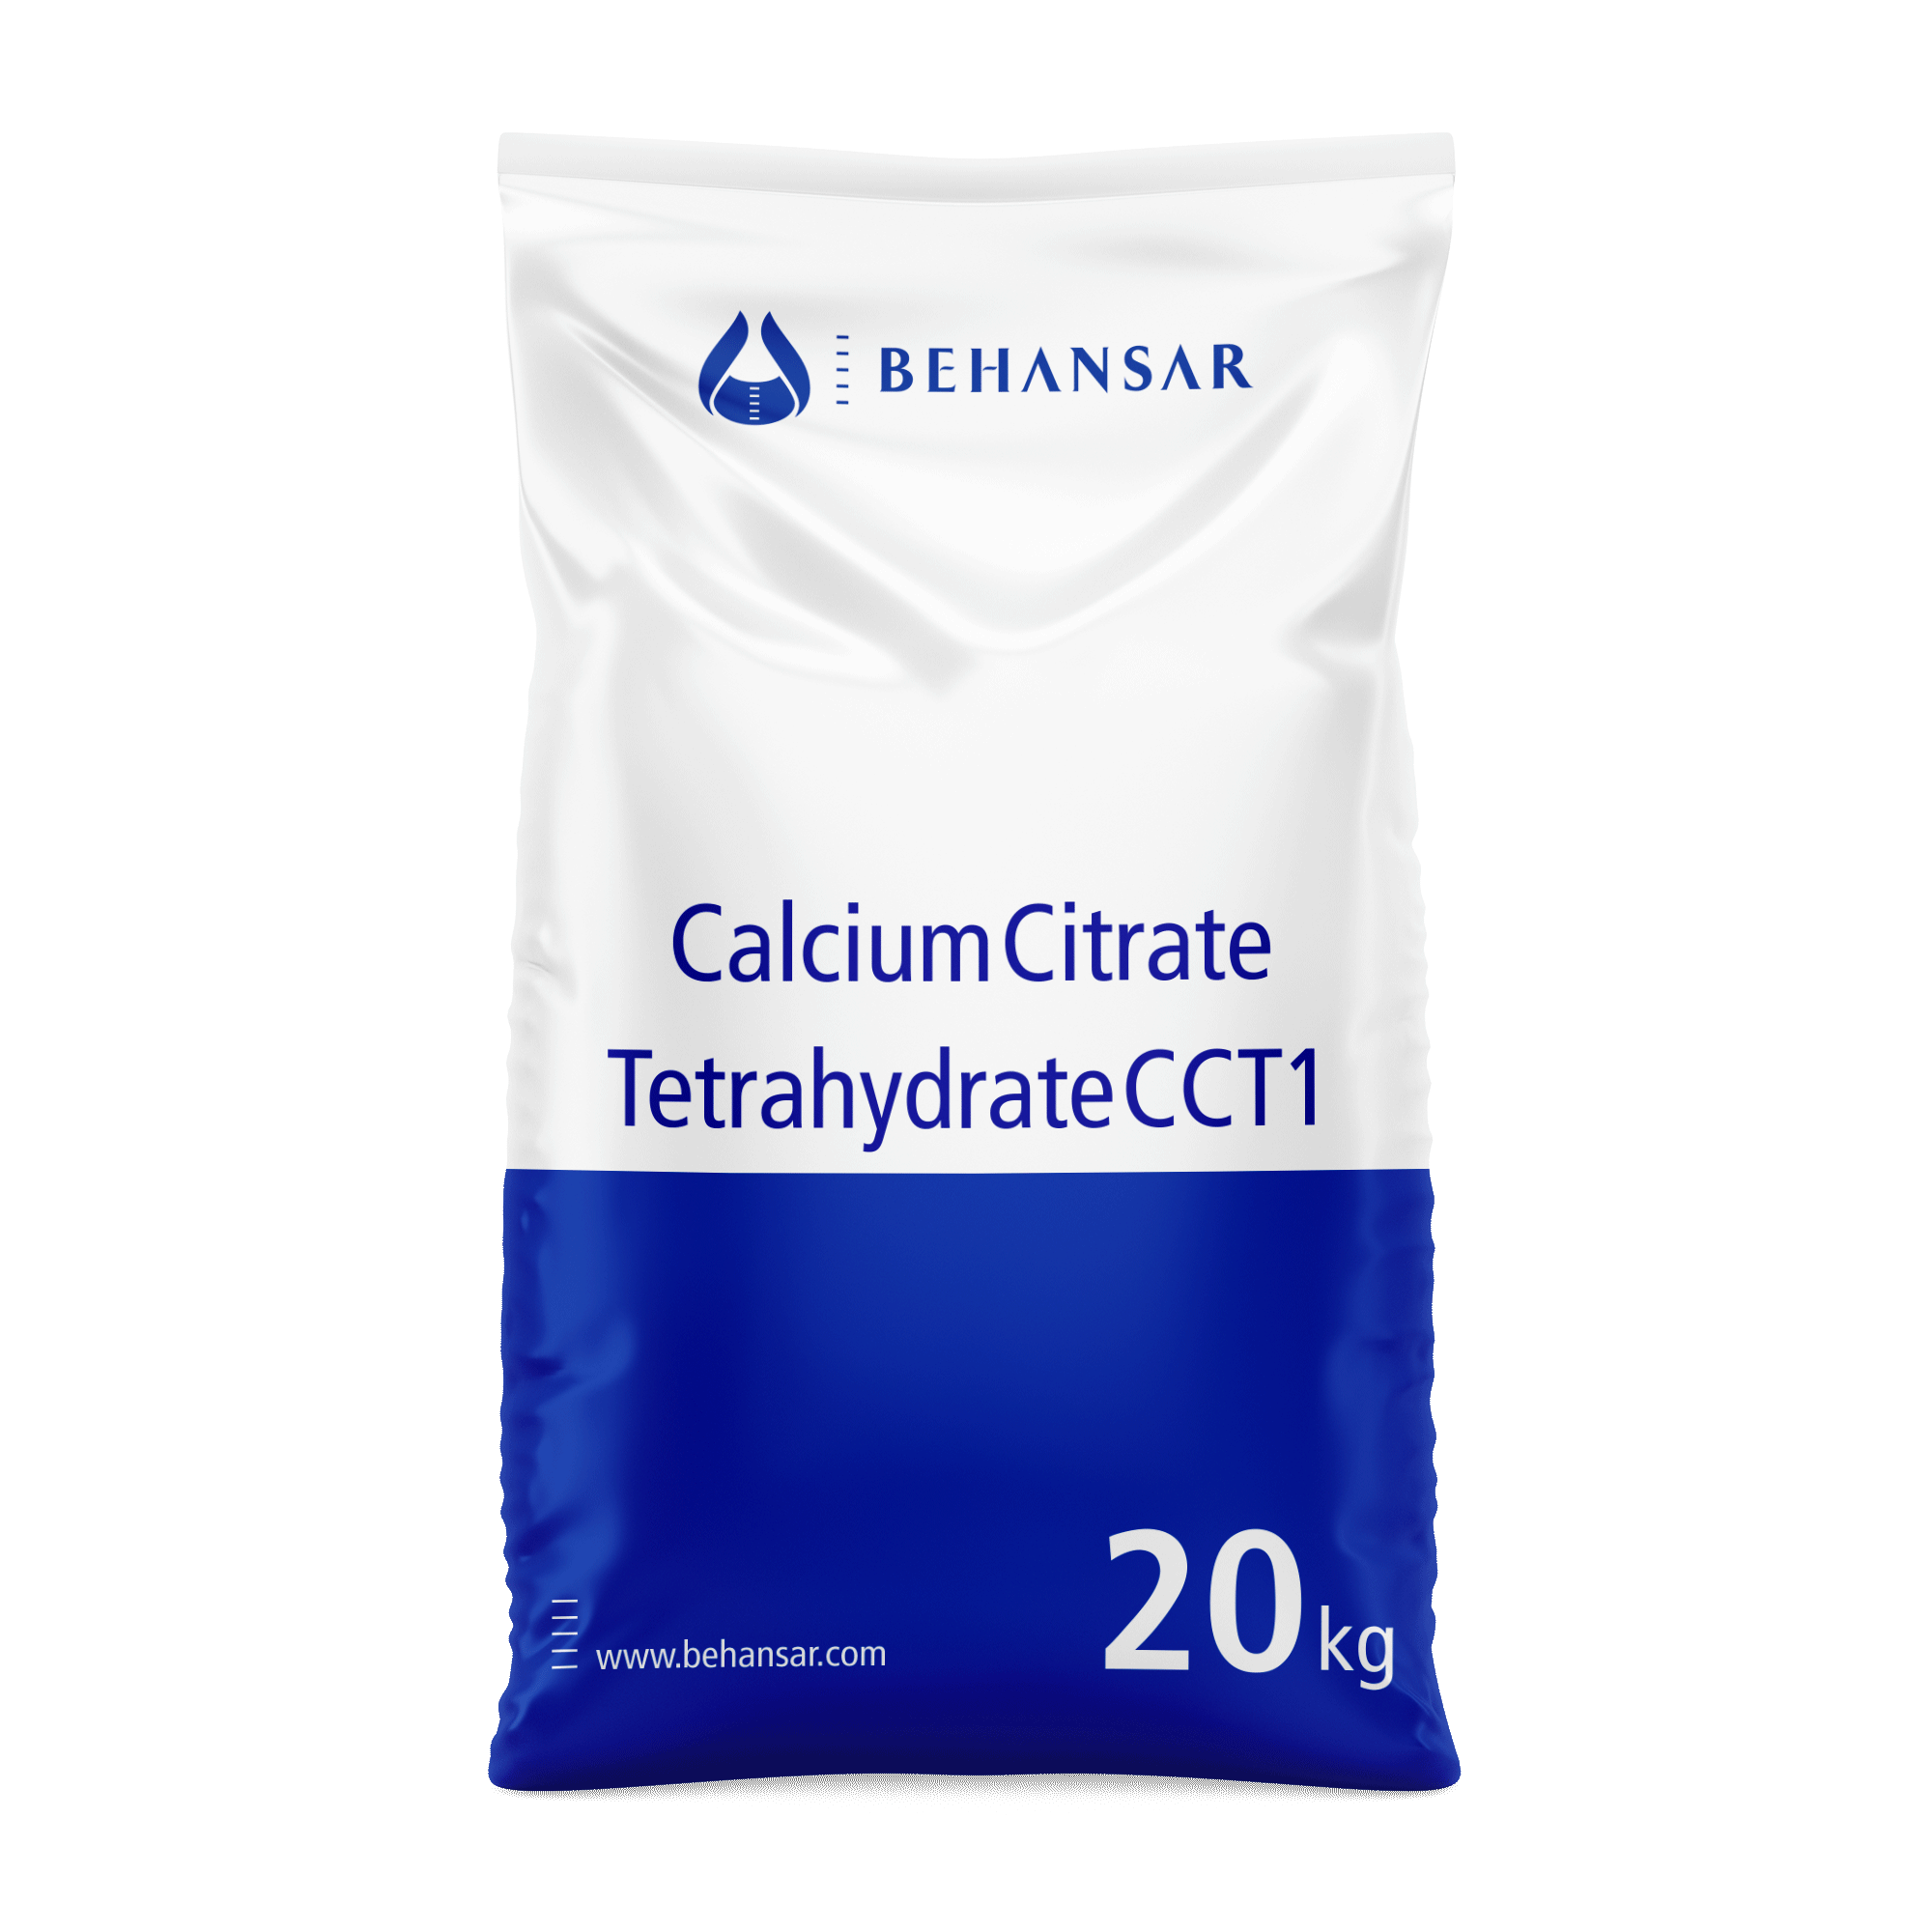 کلسیم سیترات تترا هیدرات CCT1 یکی از تولیدات شرکت بهانسار است